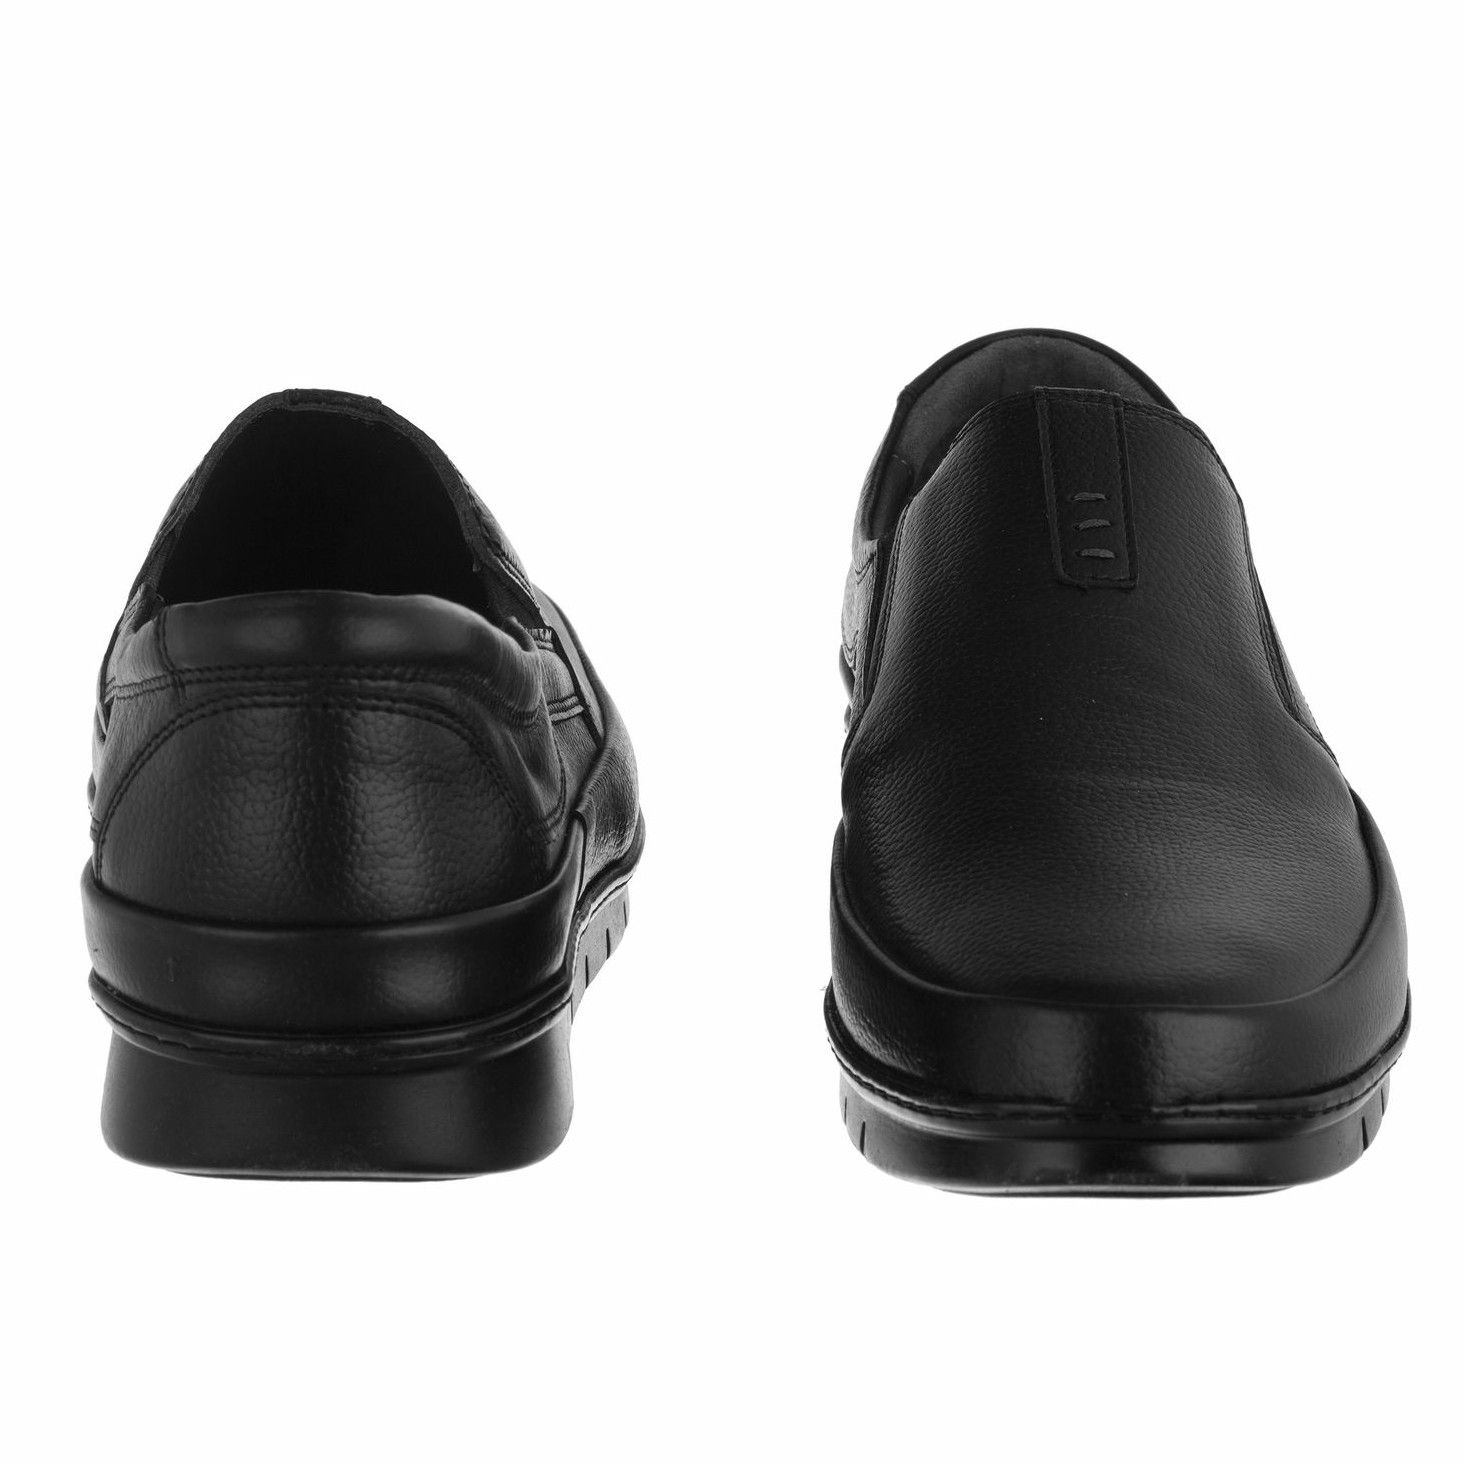 کفش روزمره مردانه دلفارد مدل چرم طبیعی کد A503101 -  - 4